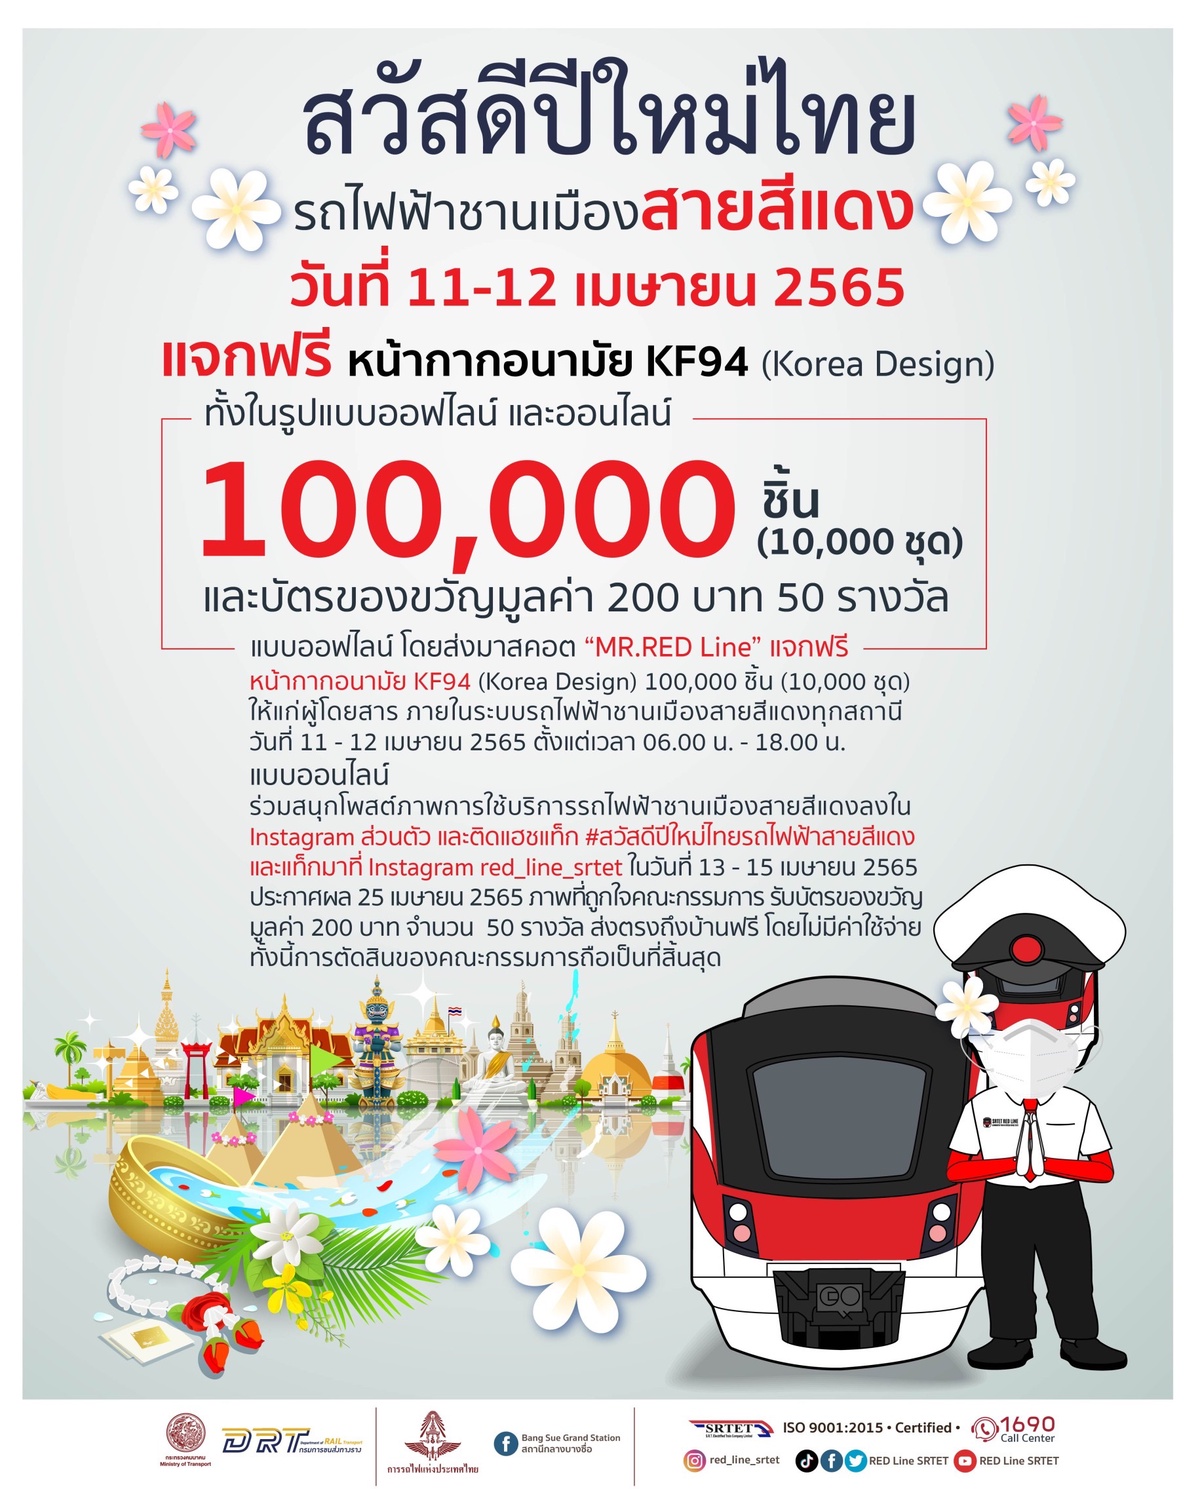 รฟฟท. สวัสดีปีใหม่ไทยผู้โดยสารเนื่องในโอกาสเทศกาลสงกรานต์ ส่งมอบความสุข และความห่วงใย ผ่านกิจกรรมการตลาดสุดพิเศษ! ทั้งในรูปแบบออฟไลน์